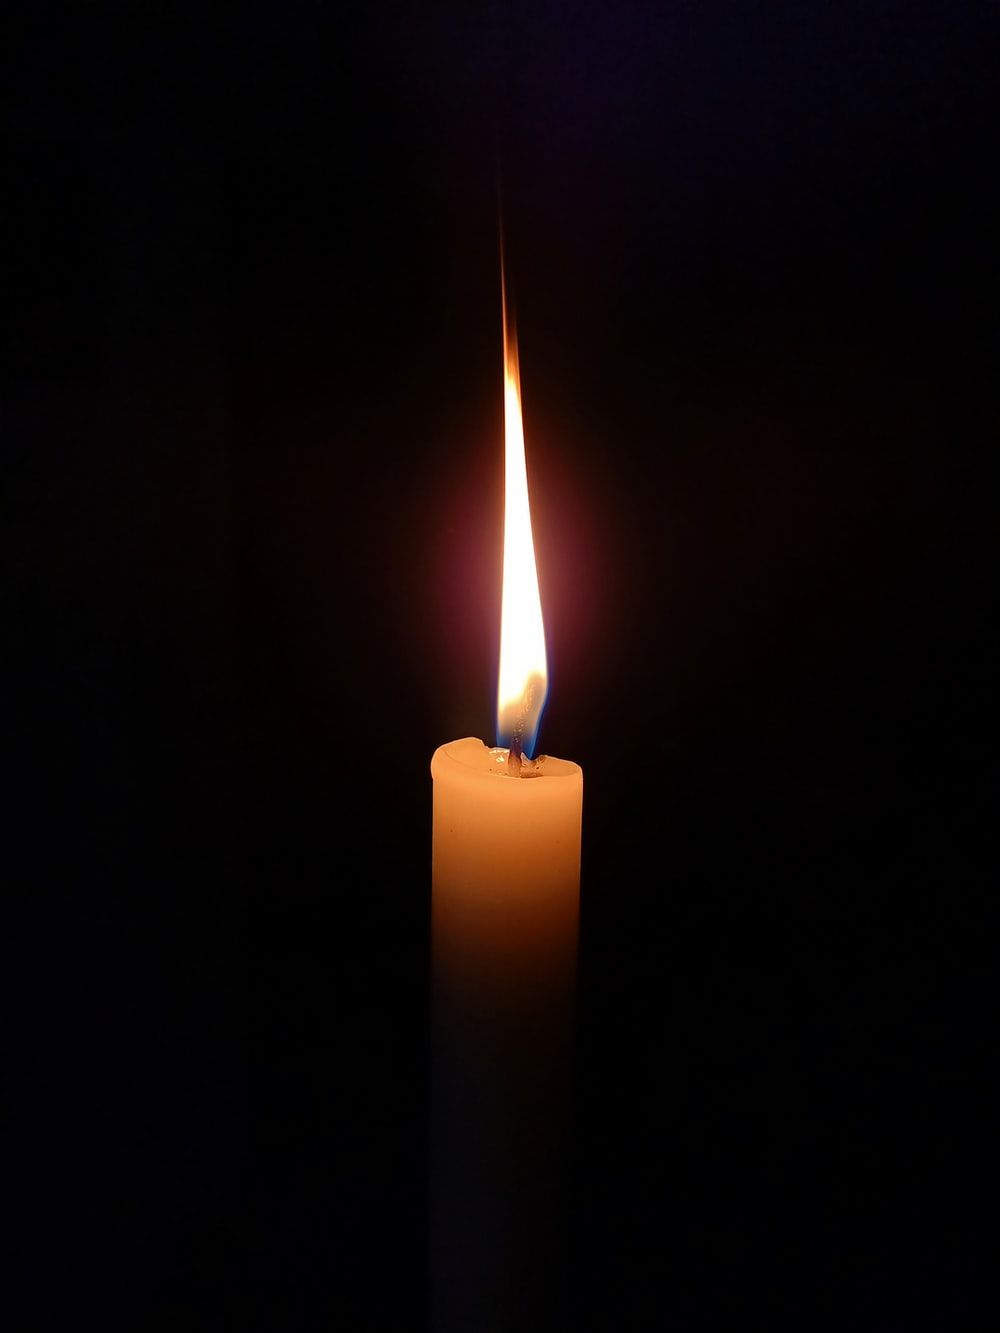 عکس شمع بدون نوشته تسلیت برای عزیز از دست داده 